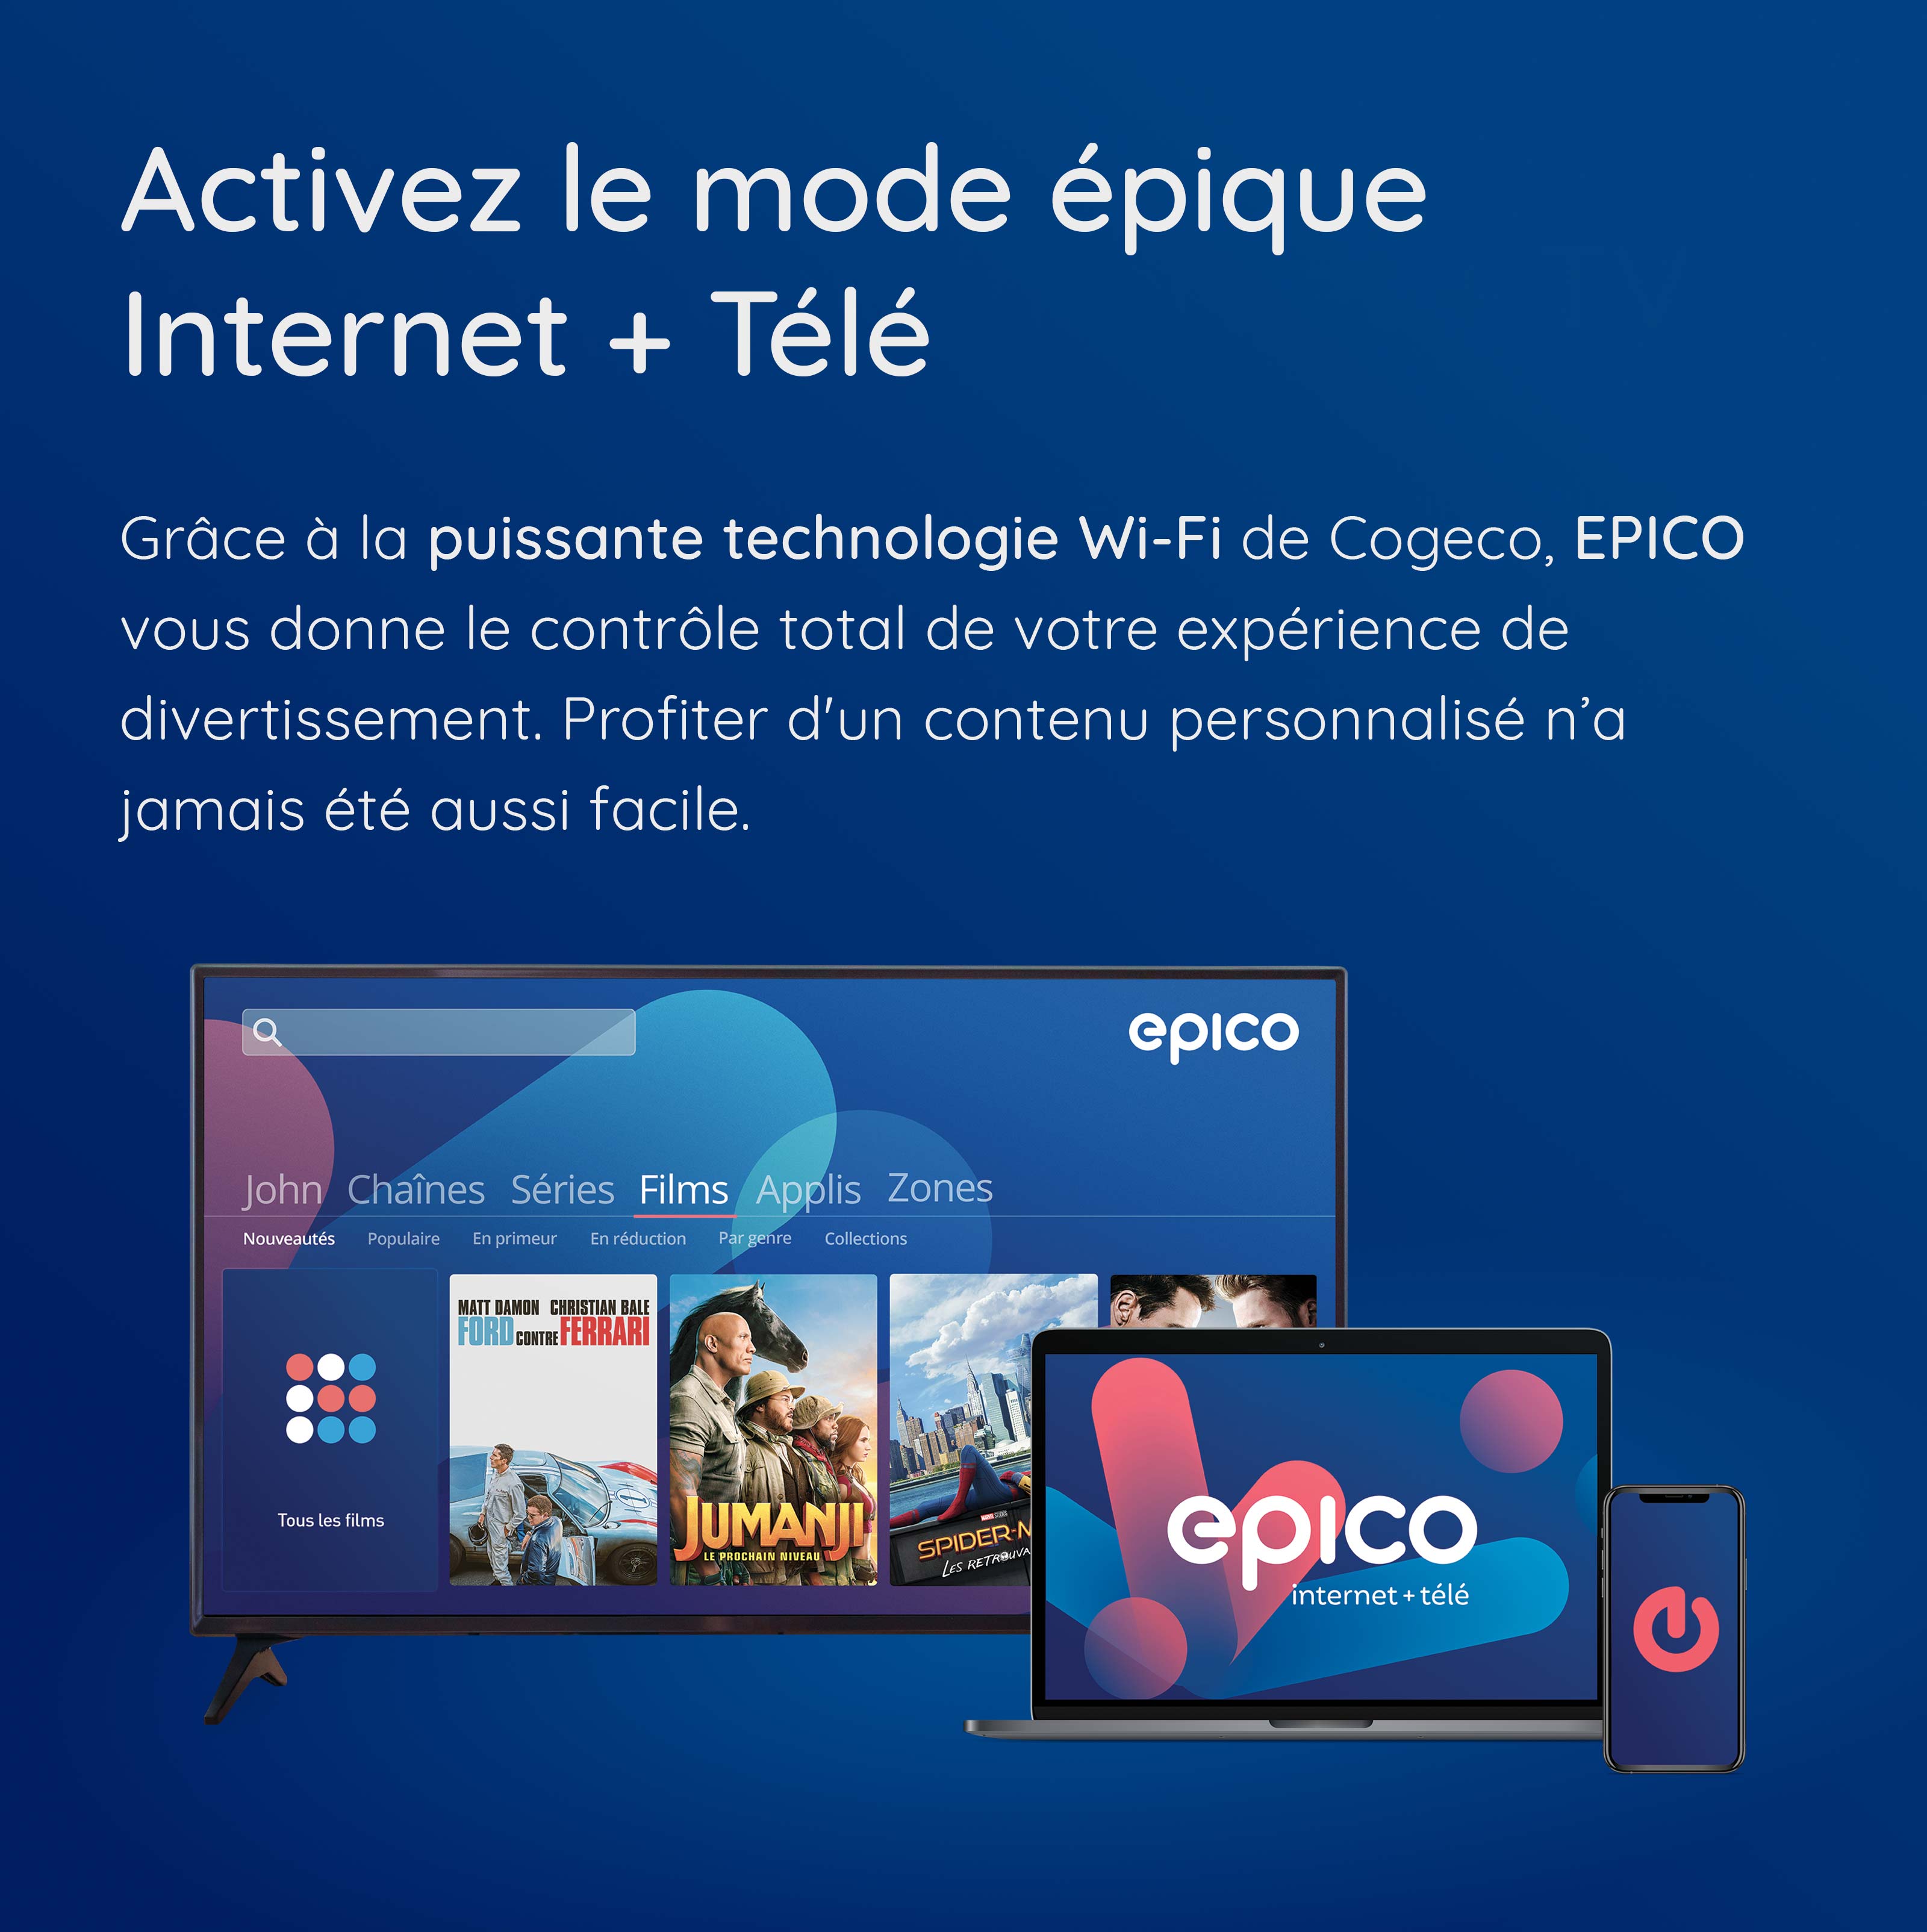 Grâce à la puissante technologie Wi-Fi de Cogeco, EPICO vous donne le contrôle total de votre expérience de divertissement. Profiter d'un contenu personnalisé n’a jamais été aussi facile.